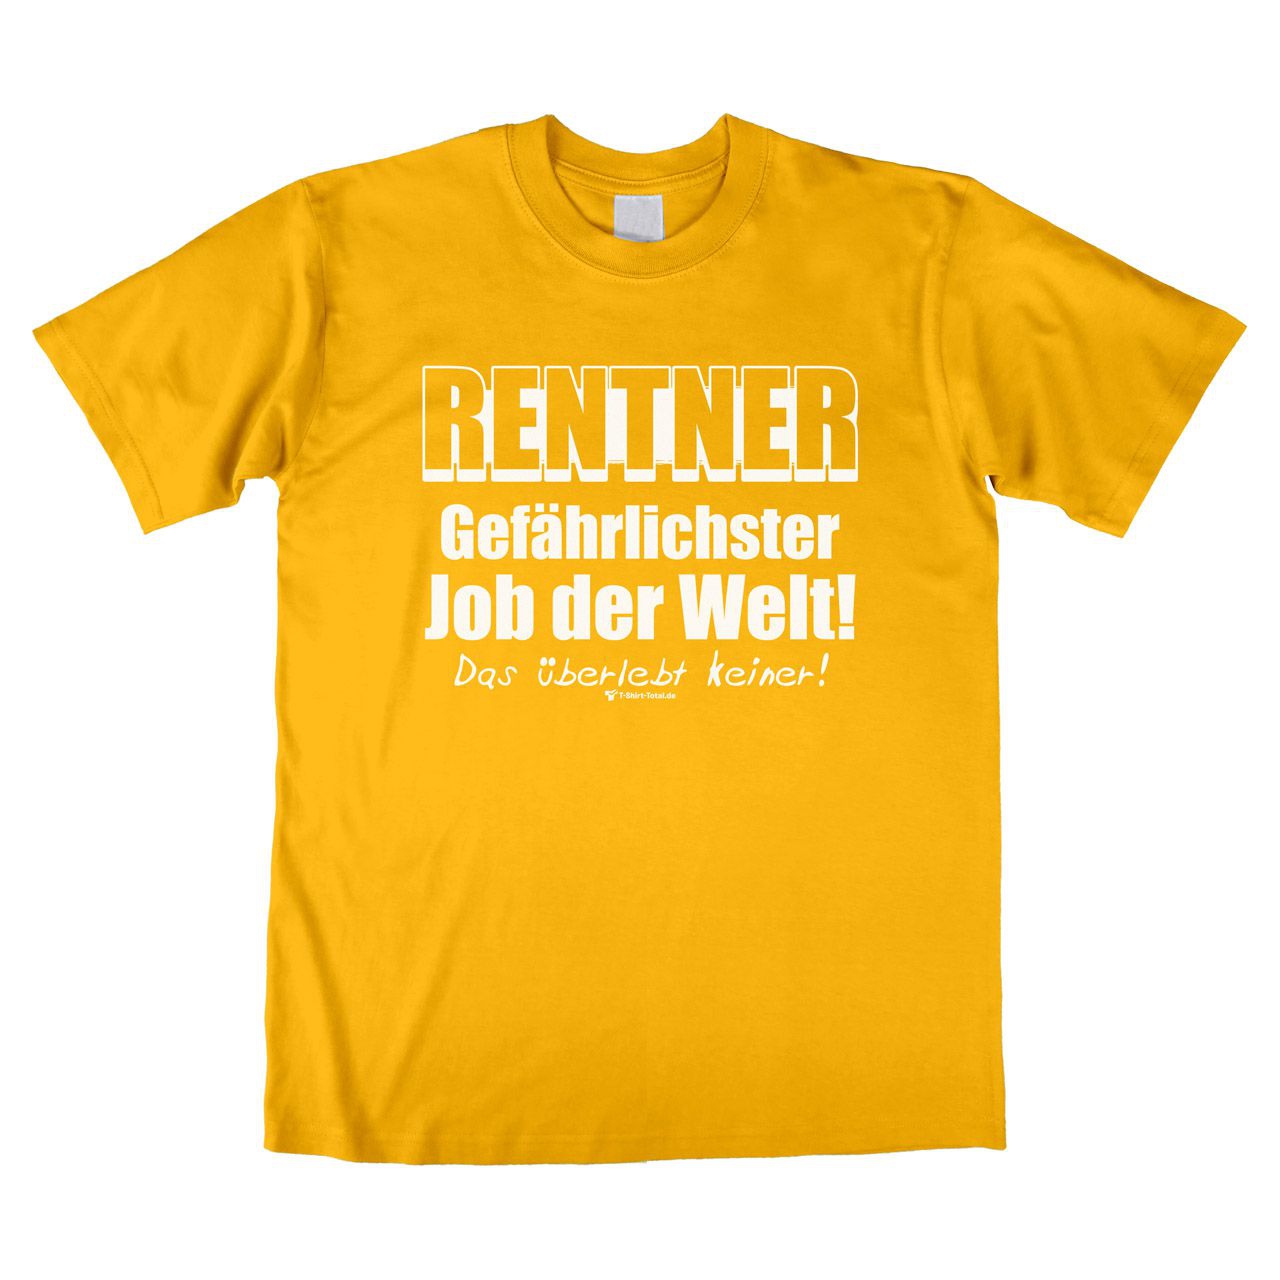 Gefährlichster Job Rentner Unisex T-Shirt gelb Extra Large